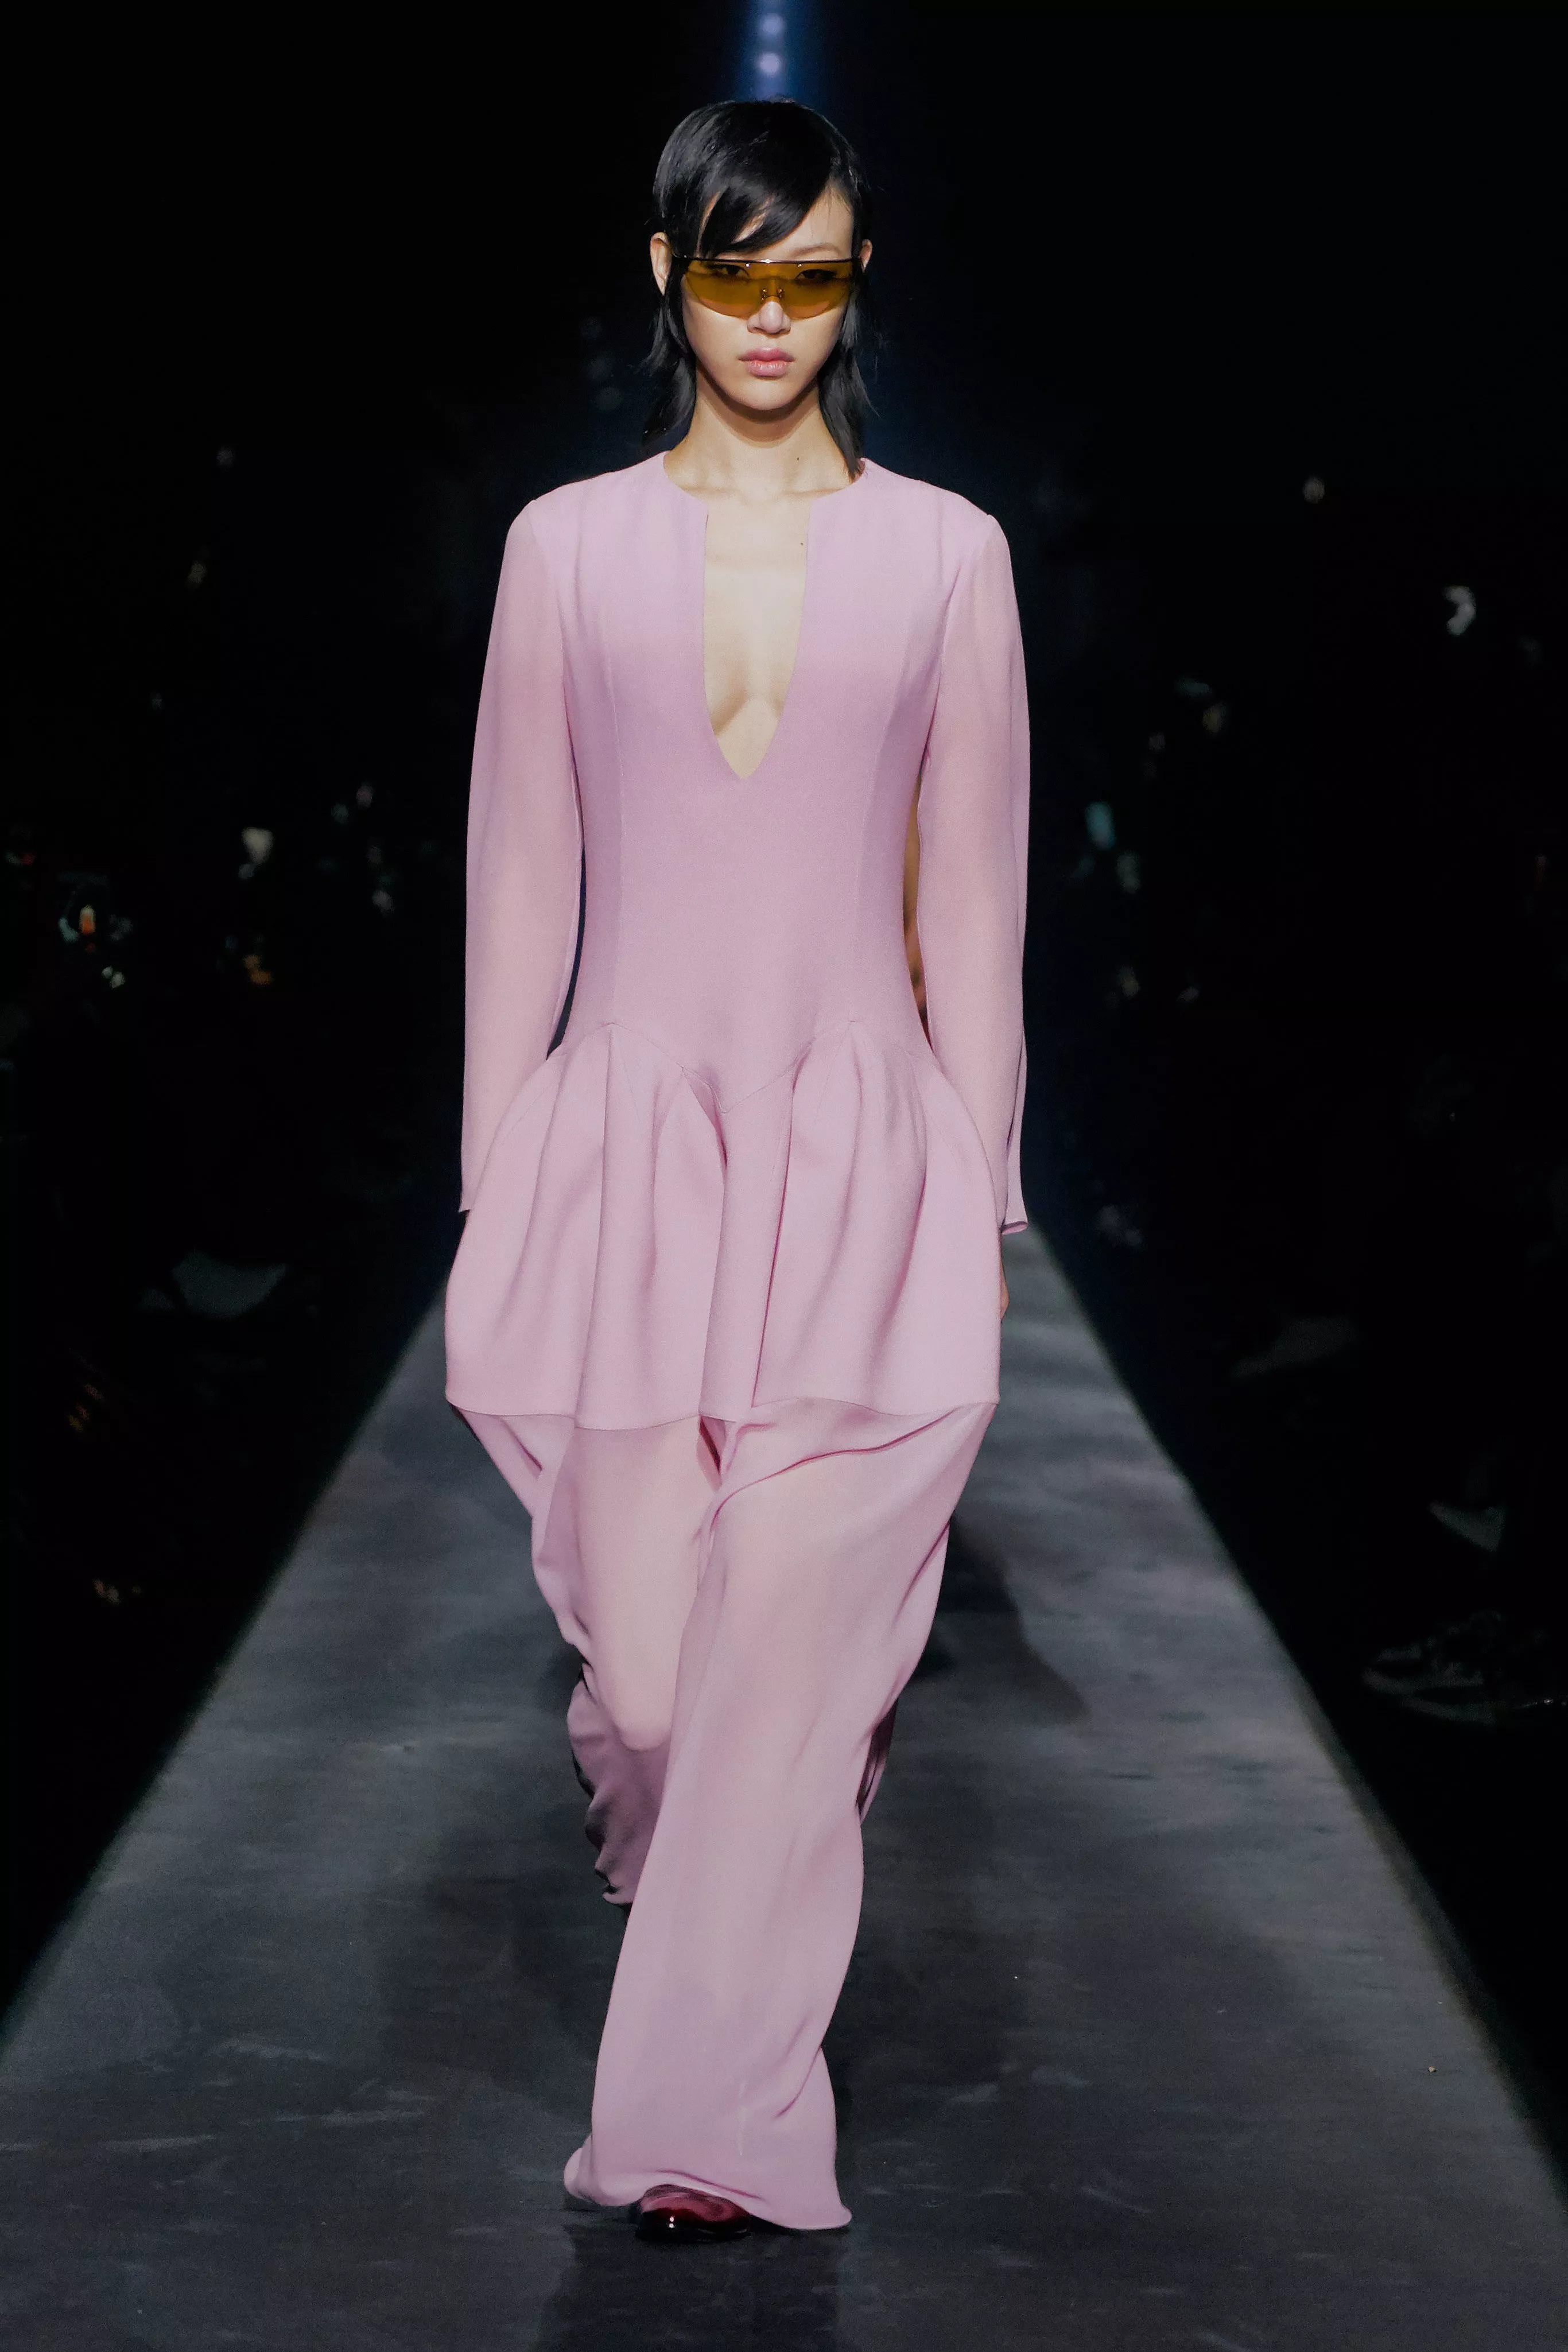 مجموعة Givenchy للأزياء الجاهزة لخريف 2019: تصاميم مستوحاة من الثقافة البريطانية ومن حكايا الحب القديمة